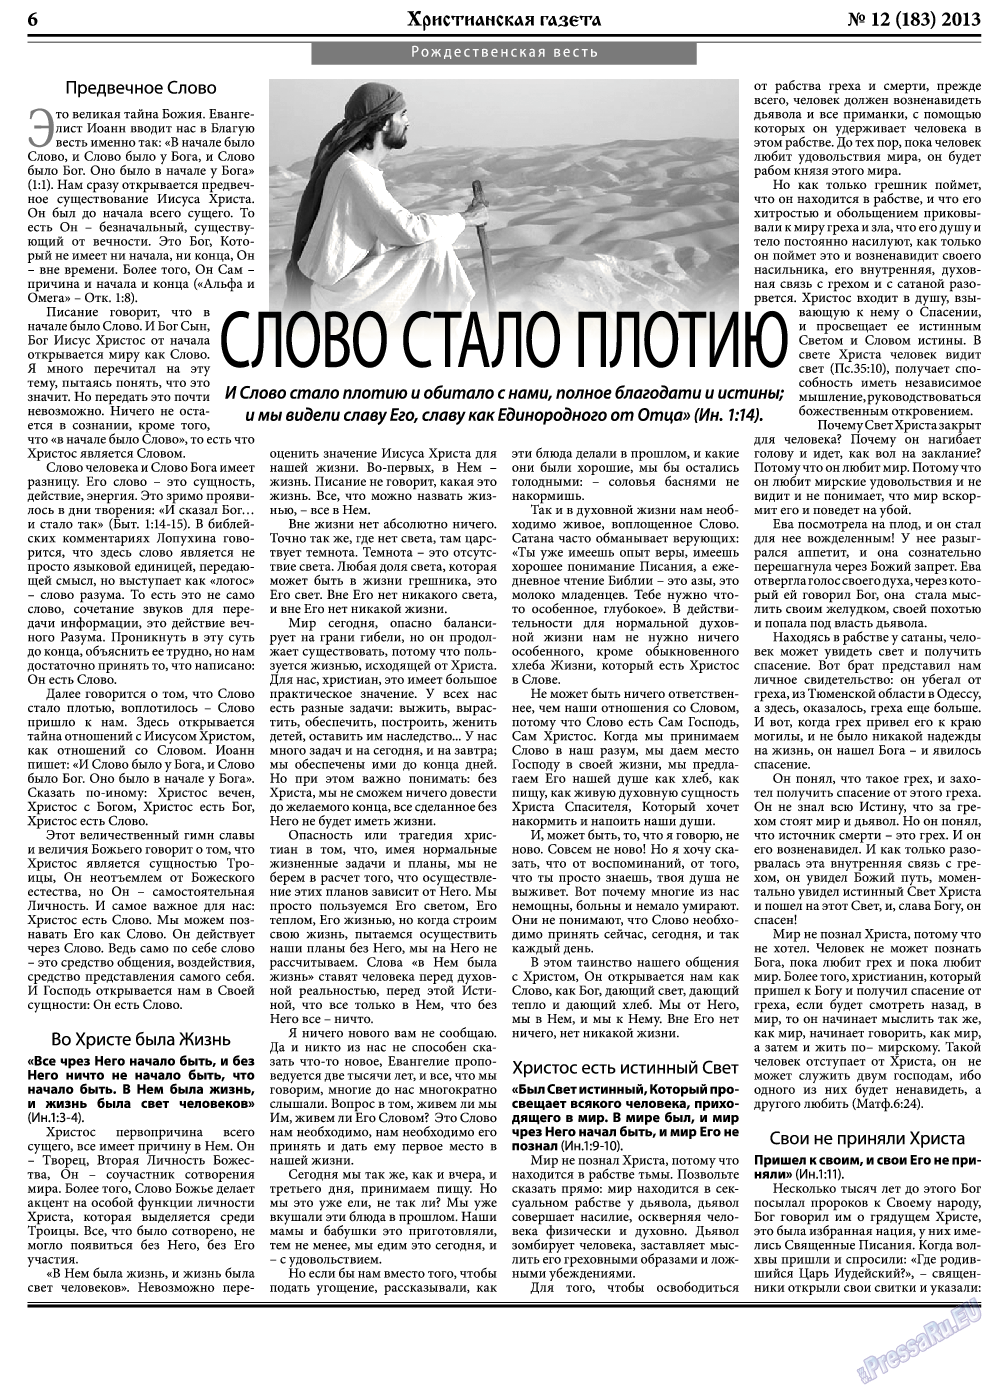 Христианская газета, газета. 2013 №12 стр.6